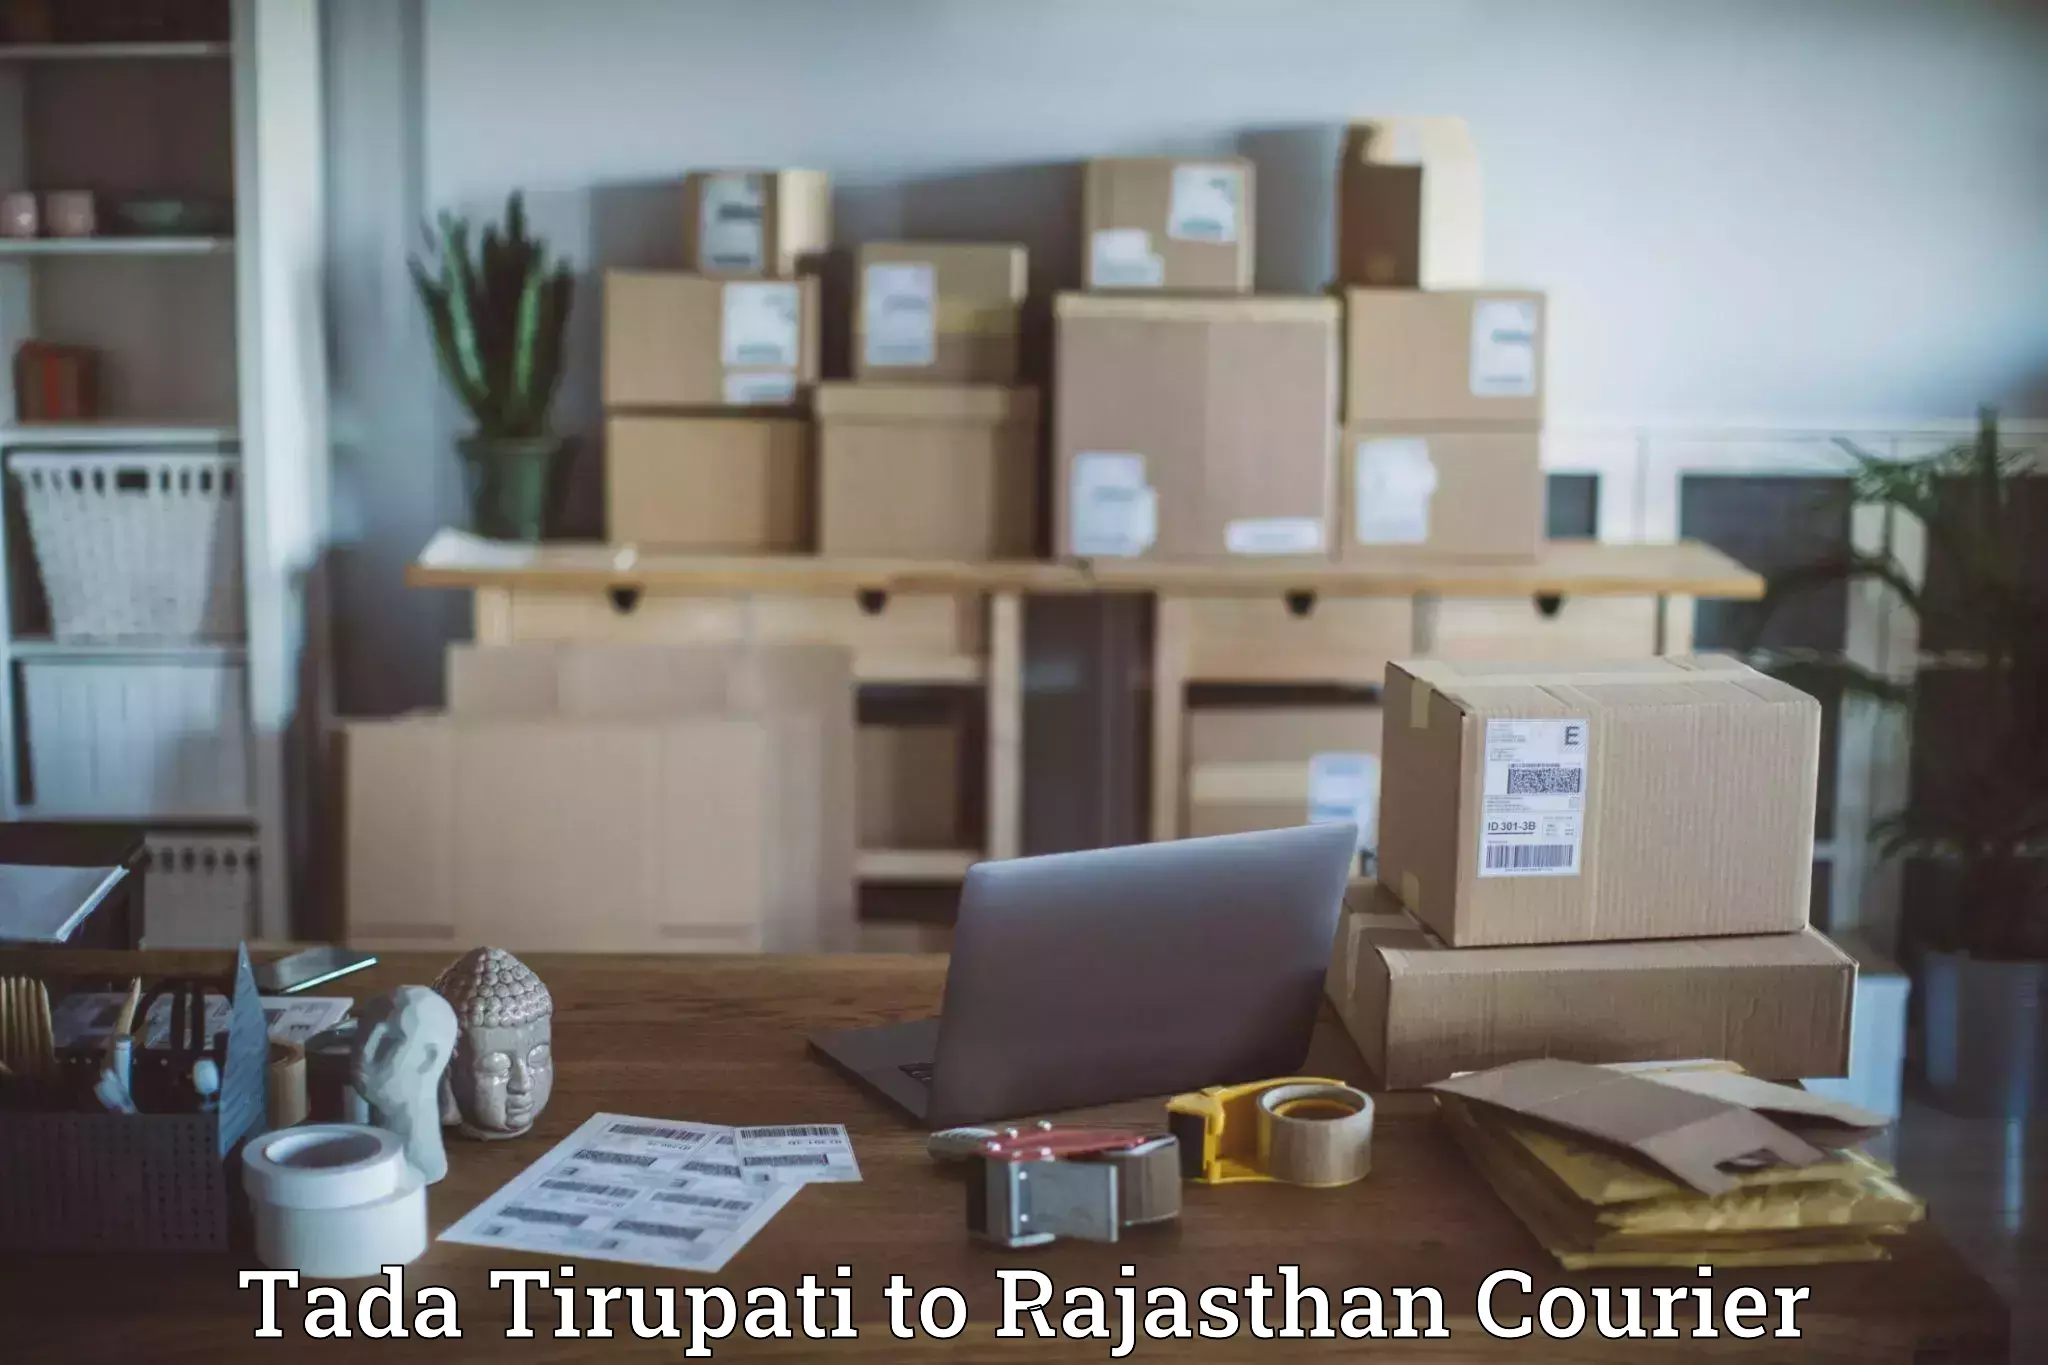 Courier app Tada Tirupati to Sardarshahr